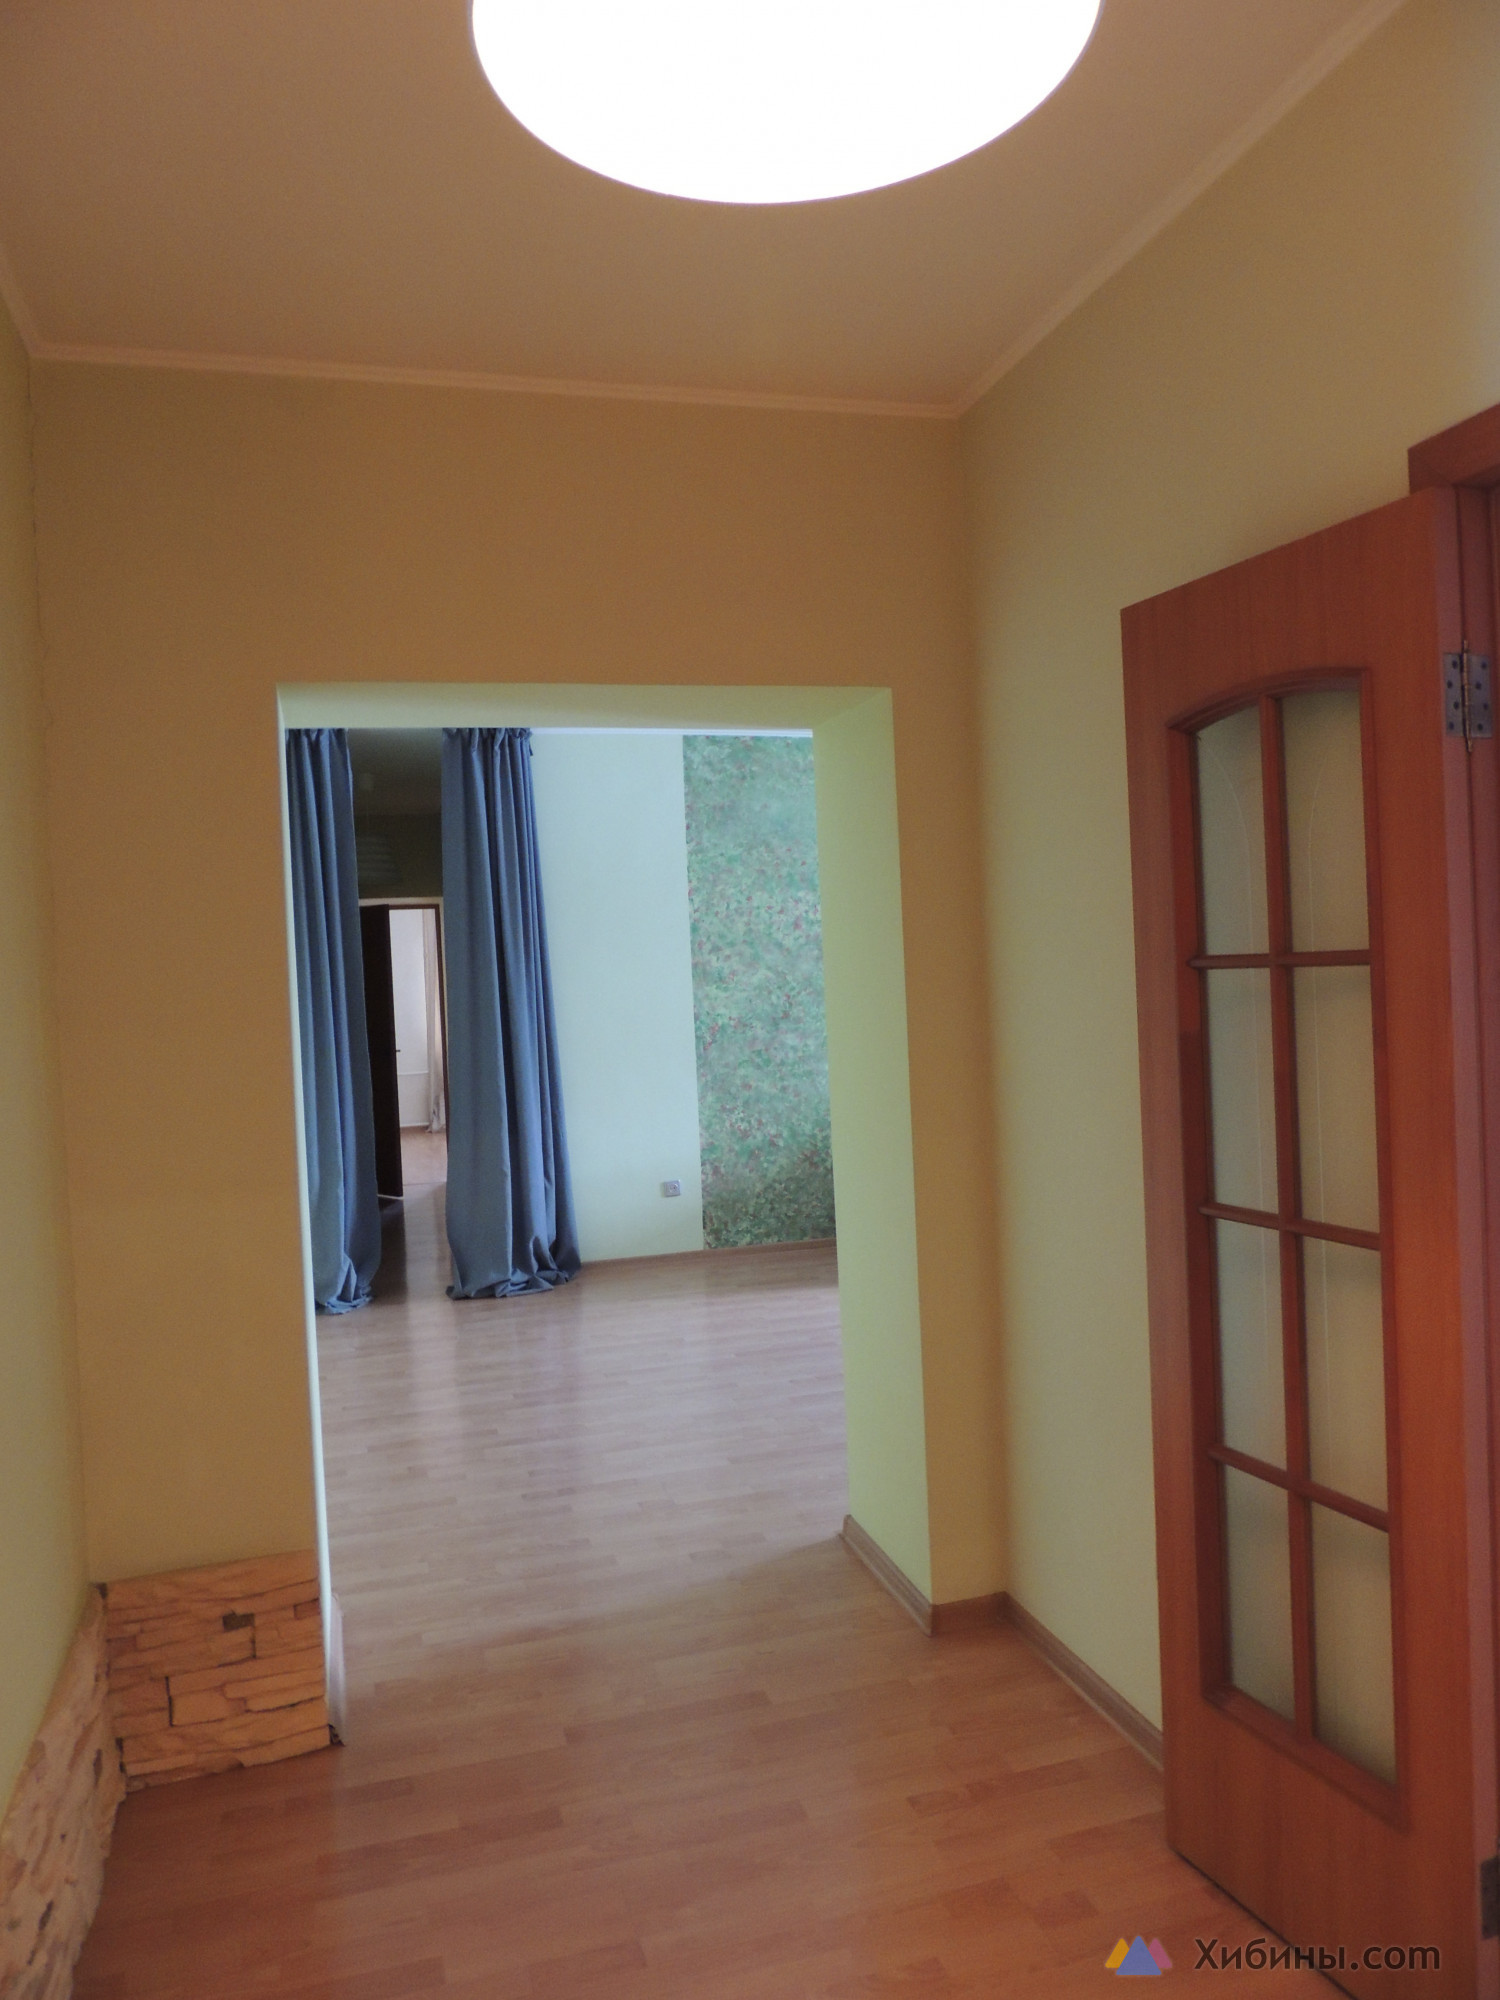 Продам 3-комнатную квартиру в Воронеже